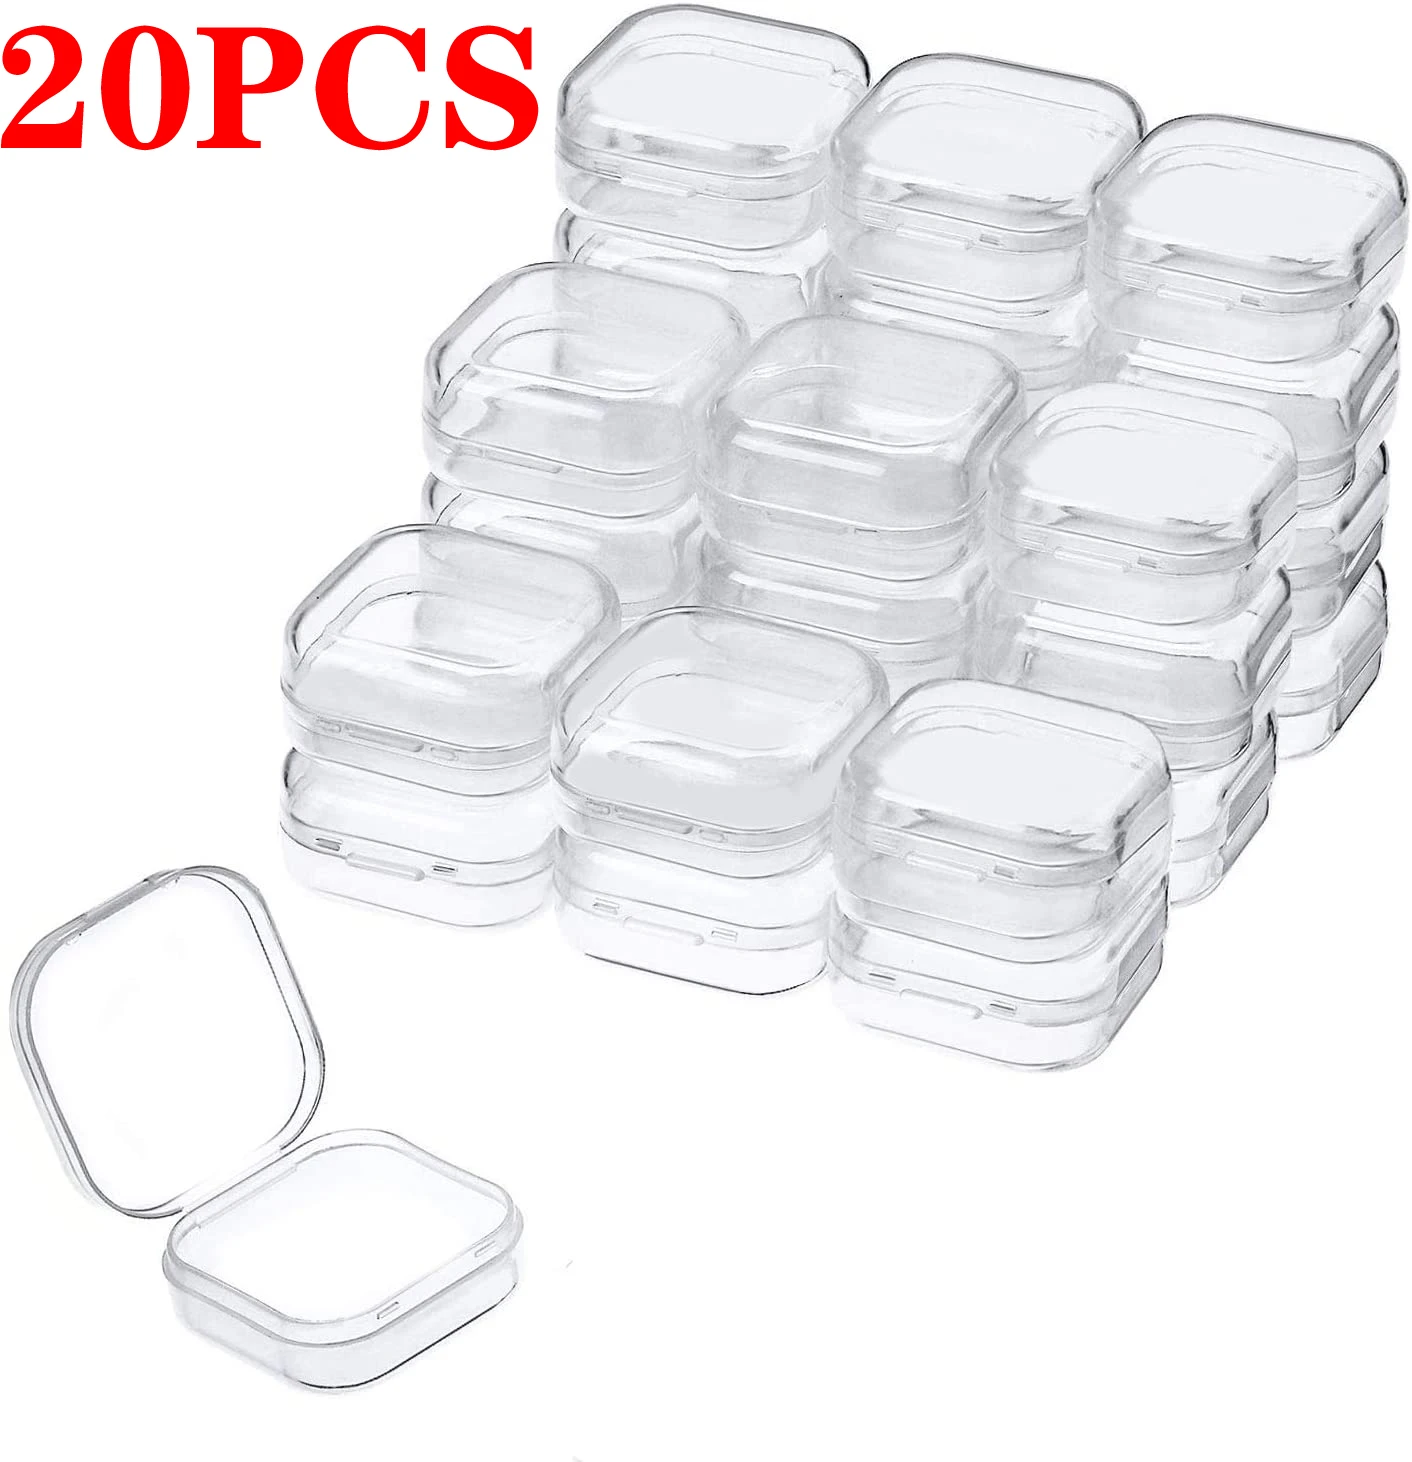 1-20 шт. маленькие квадратные прозрачные пластиковые коробки, коробка для хранения ювелирных изделий, контейнер для хранения чехлов, коробка для хранения сережек